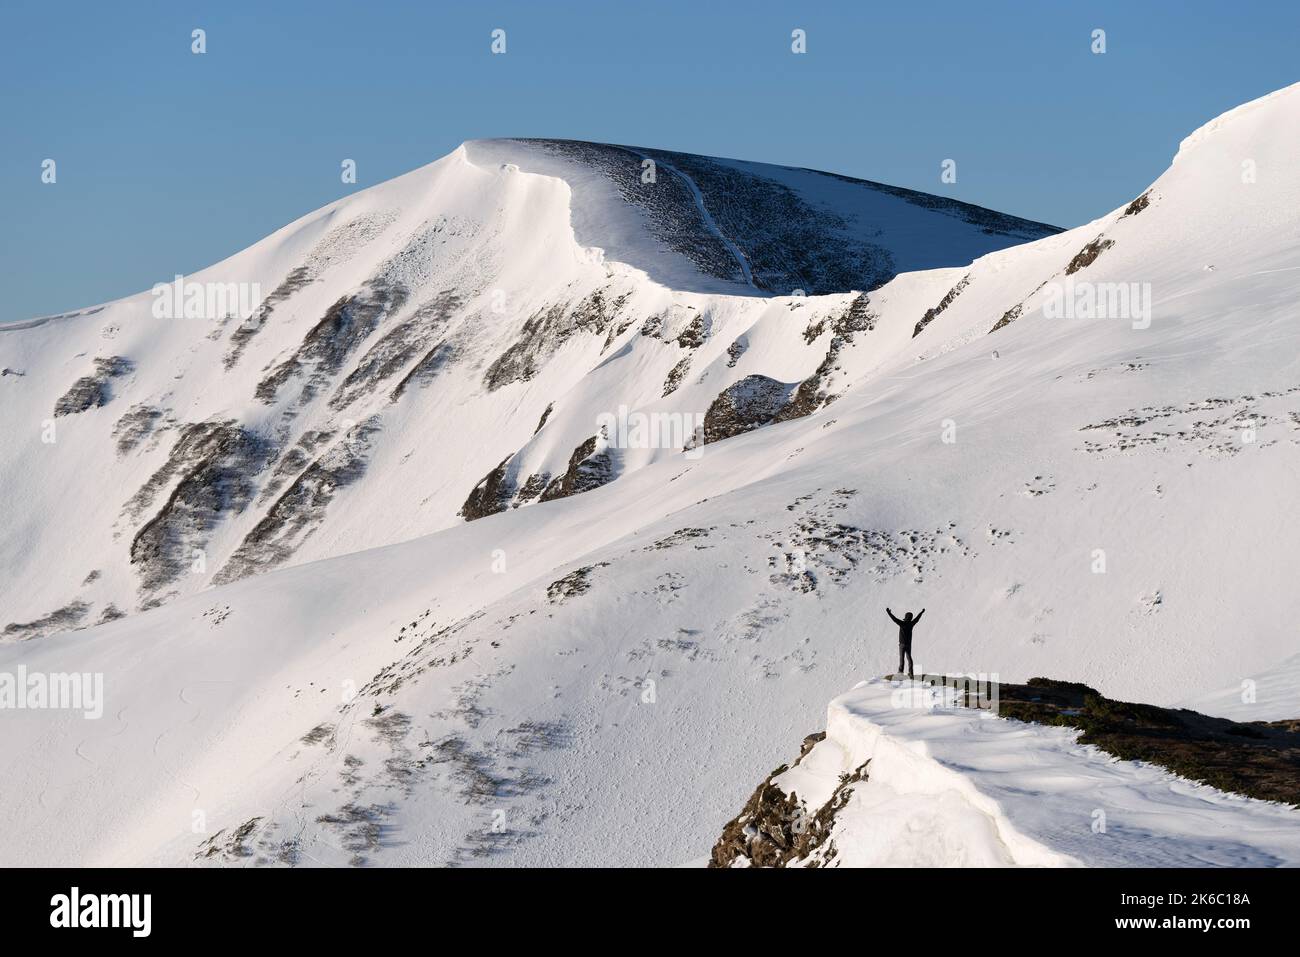 Un homme en randonnée d'hiver bénéficie de la vue sur les montagnes dans la neige Banque D'Images